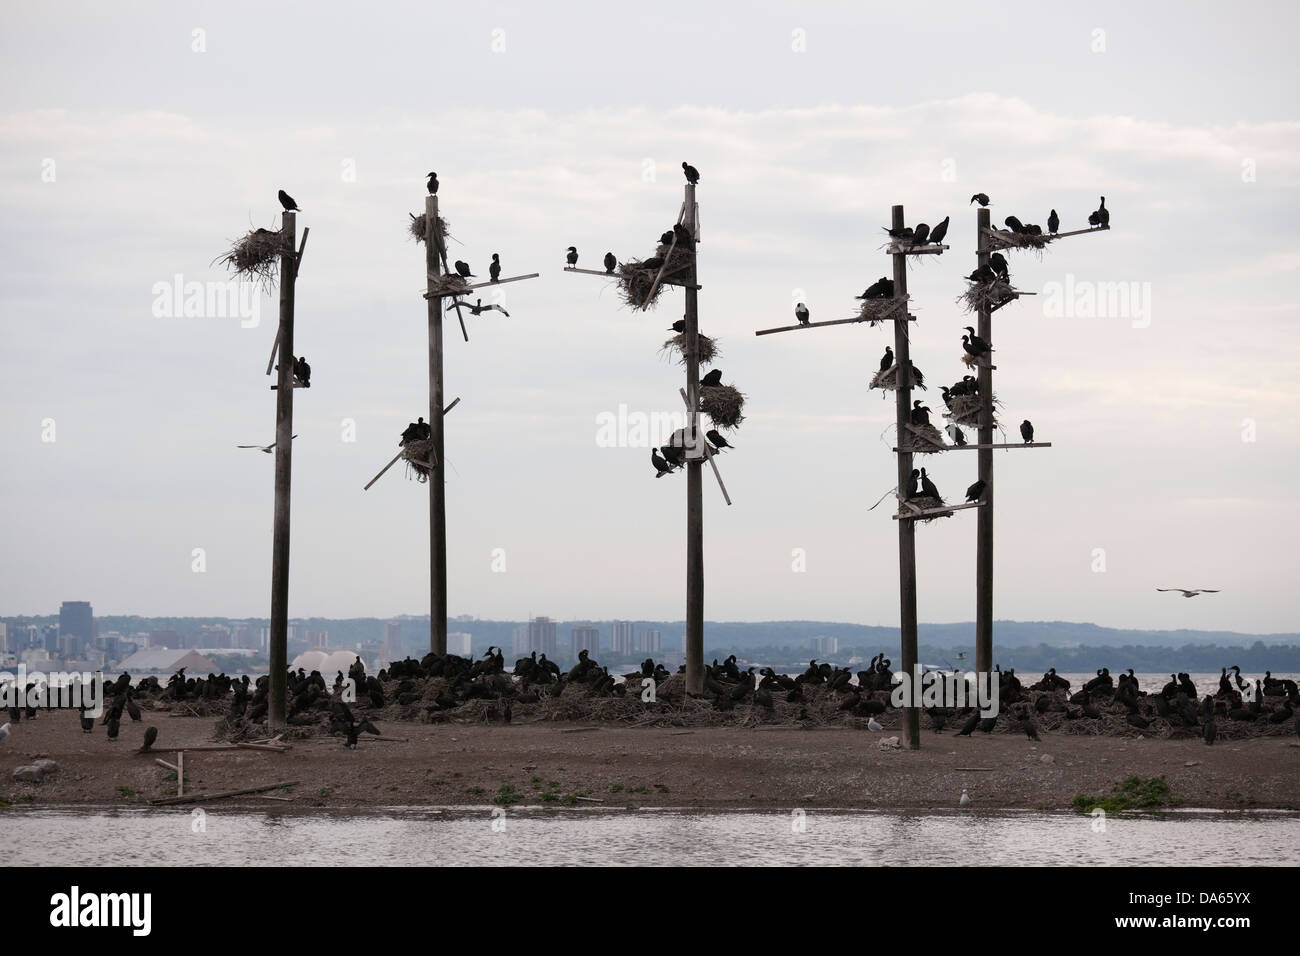 Dutzende von Kormoranen übernehmen eine kleine Insel, Hamilton, Ontario, Kanada Stockfoto